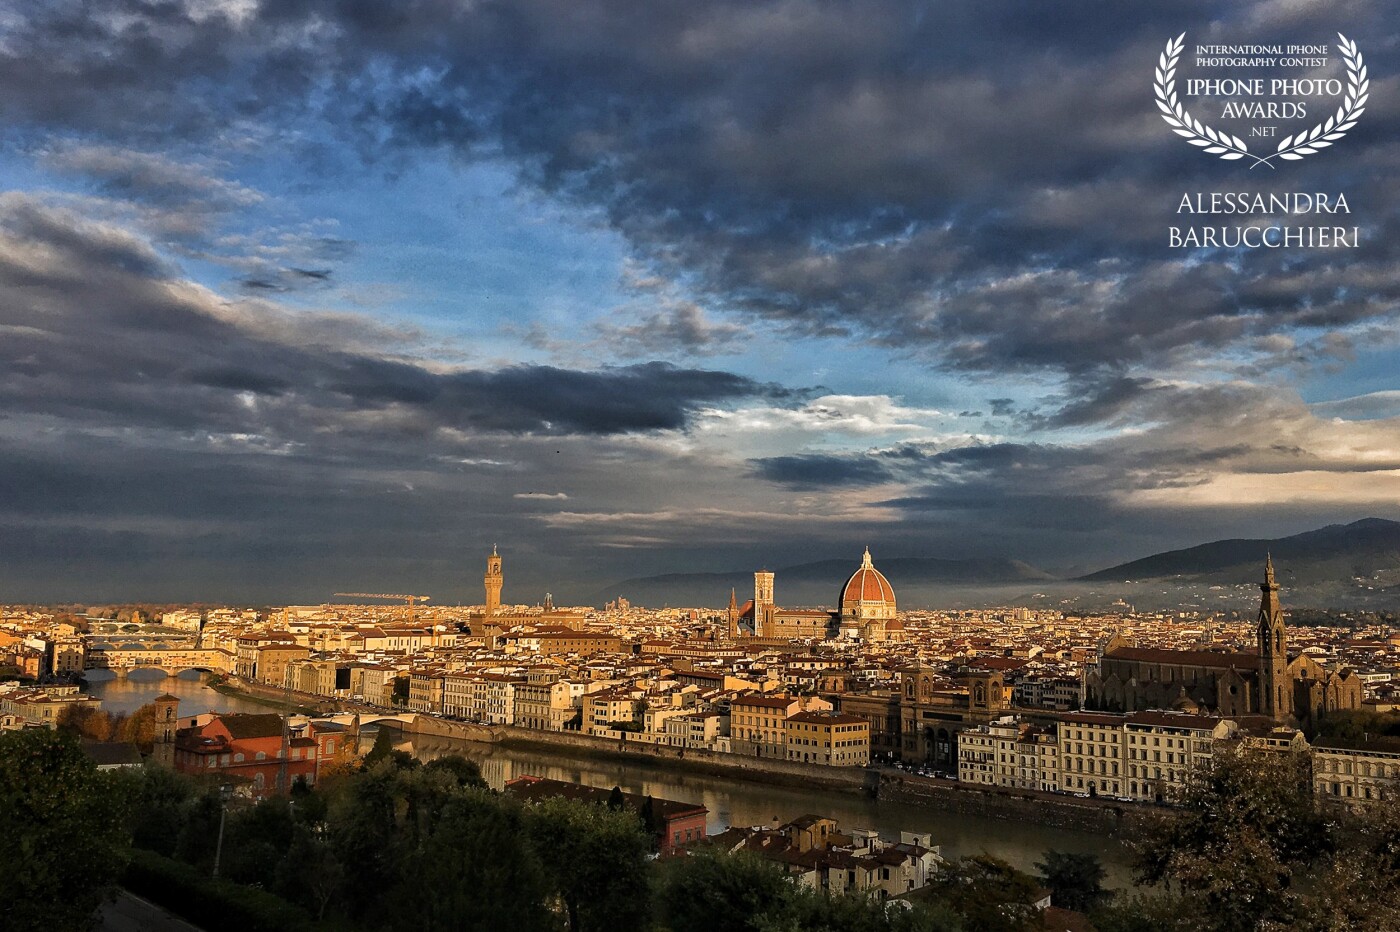 Firenze, Italy<br />
A dawn of storm clouds, and my wonderful city: Florence.<br />
<br />
Una alba di nuvole cariche di tempesta, e la mia meravigliosa città: Firenze.